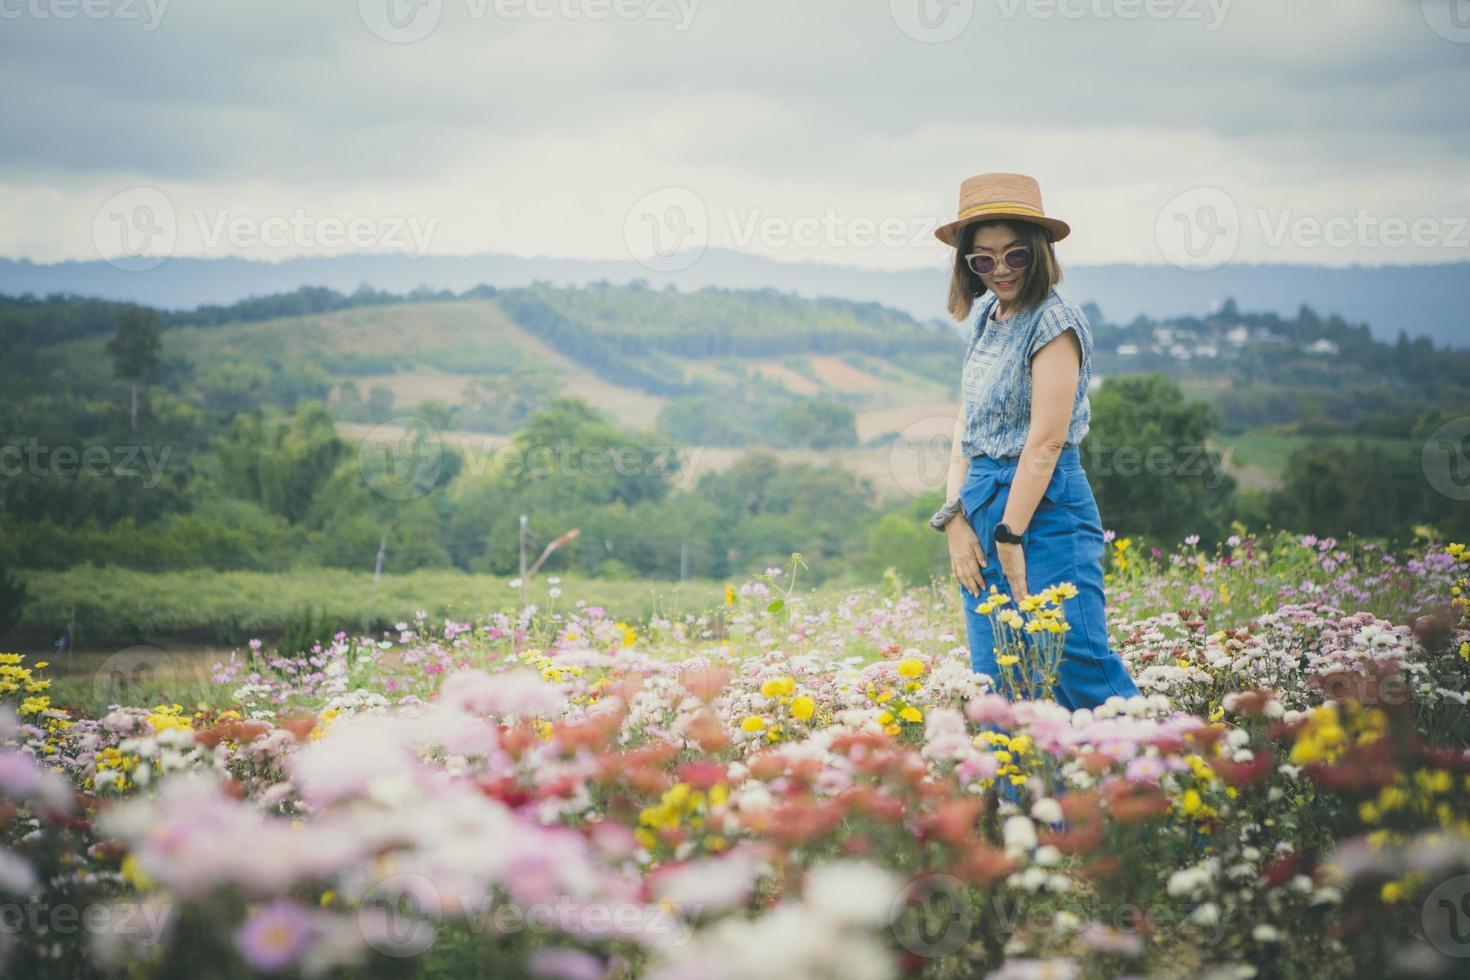 femme debout dans un jardin fleuri fleuri avec une humeur relaxante photo